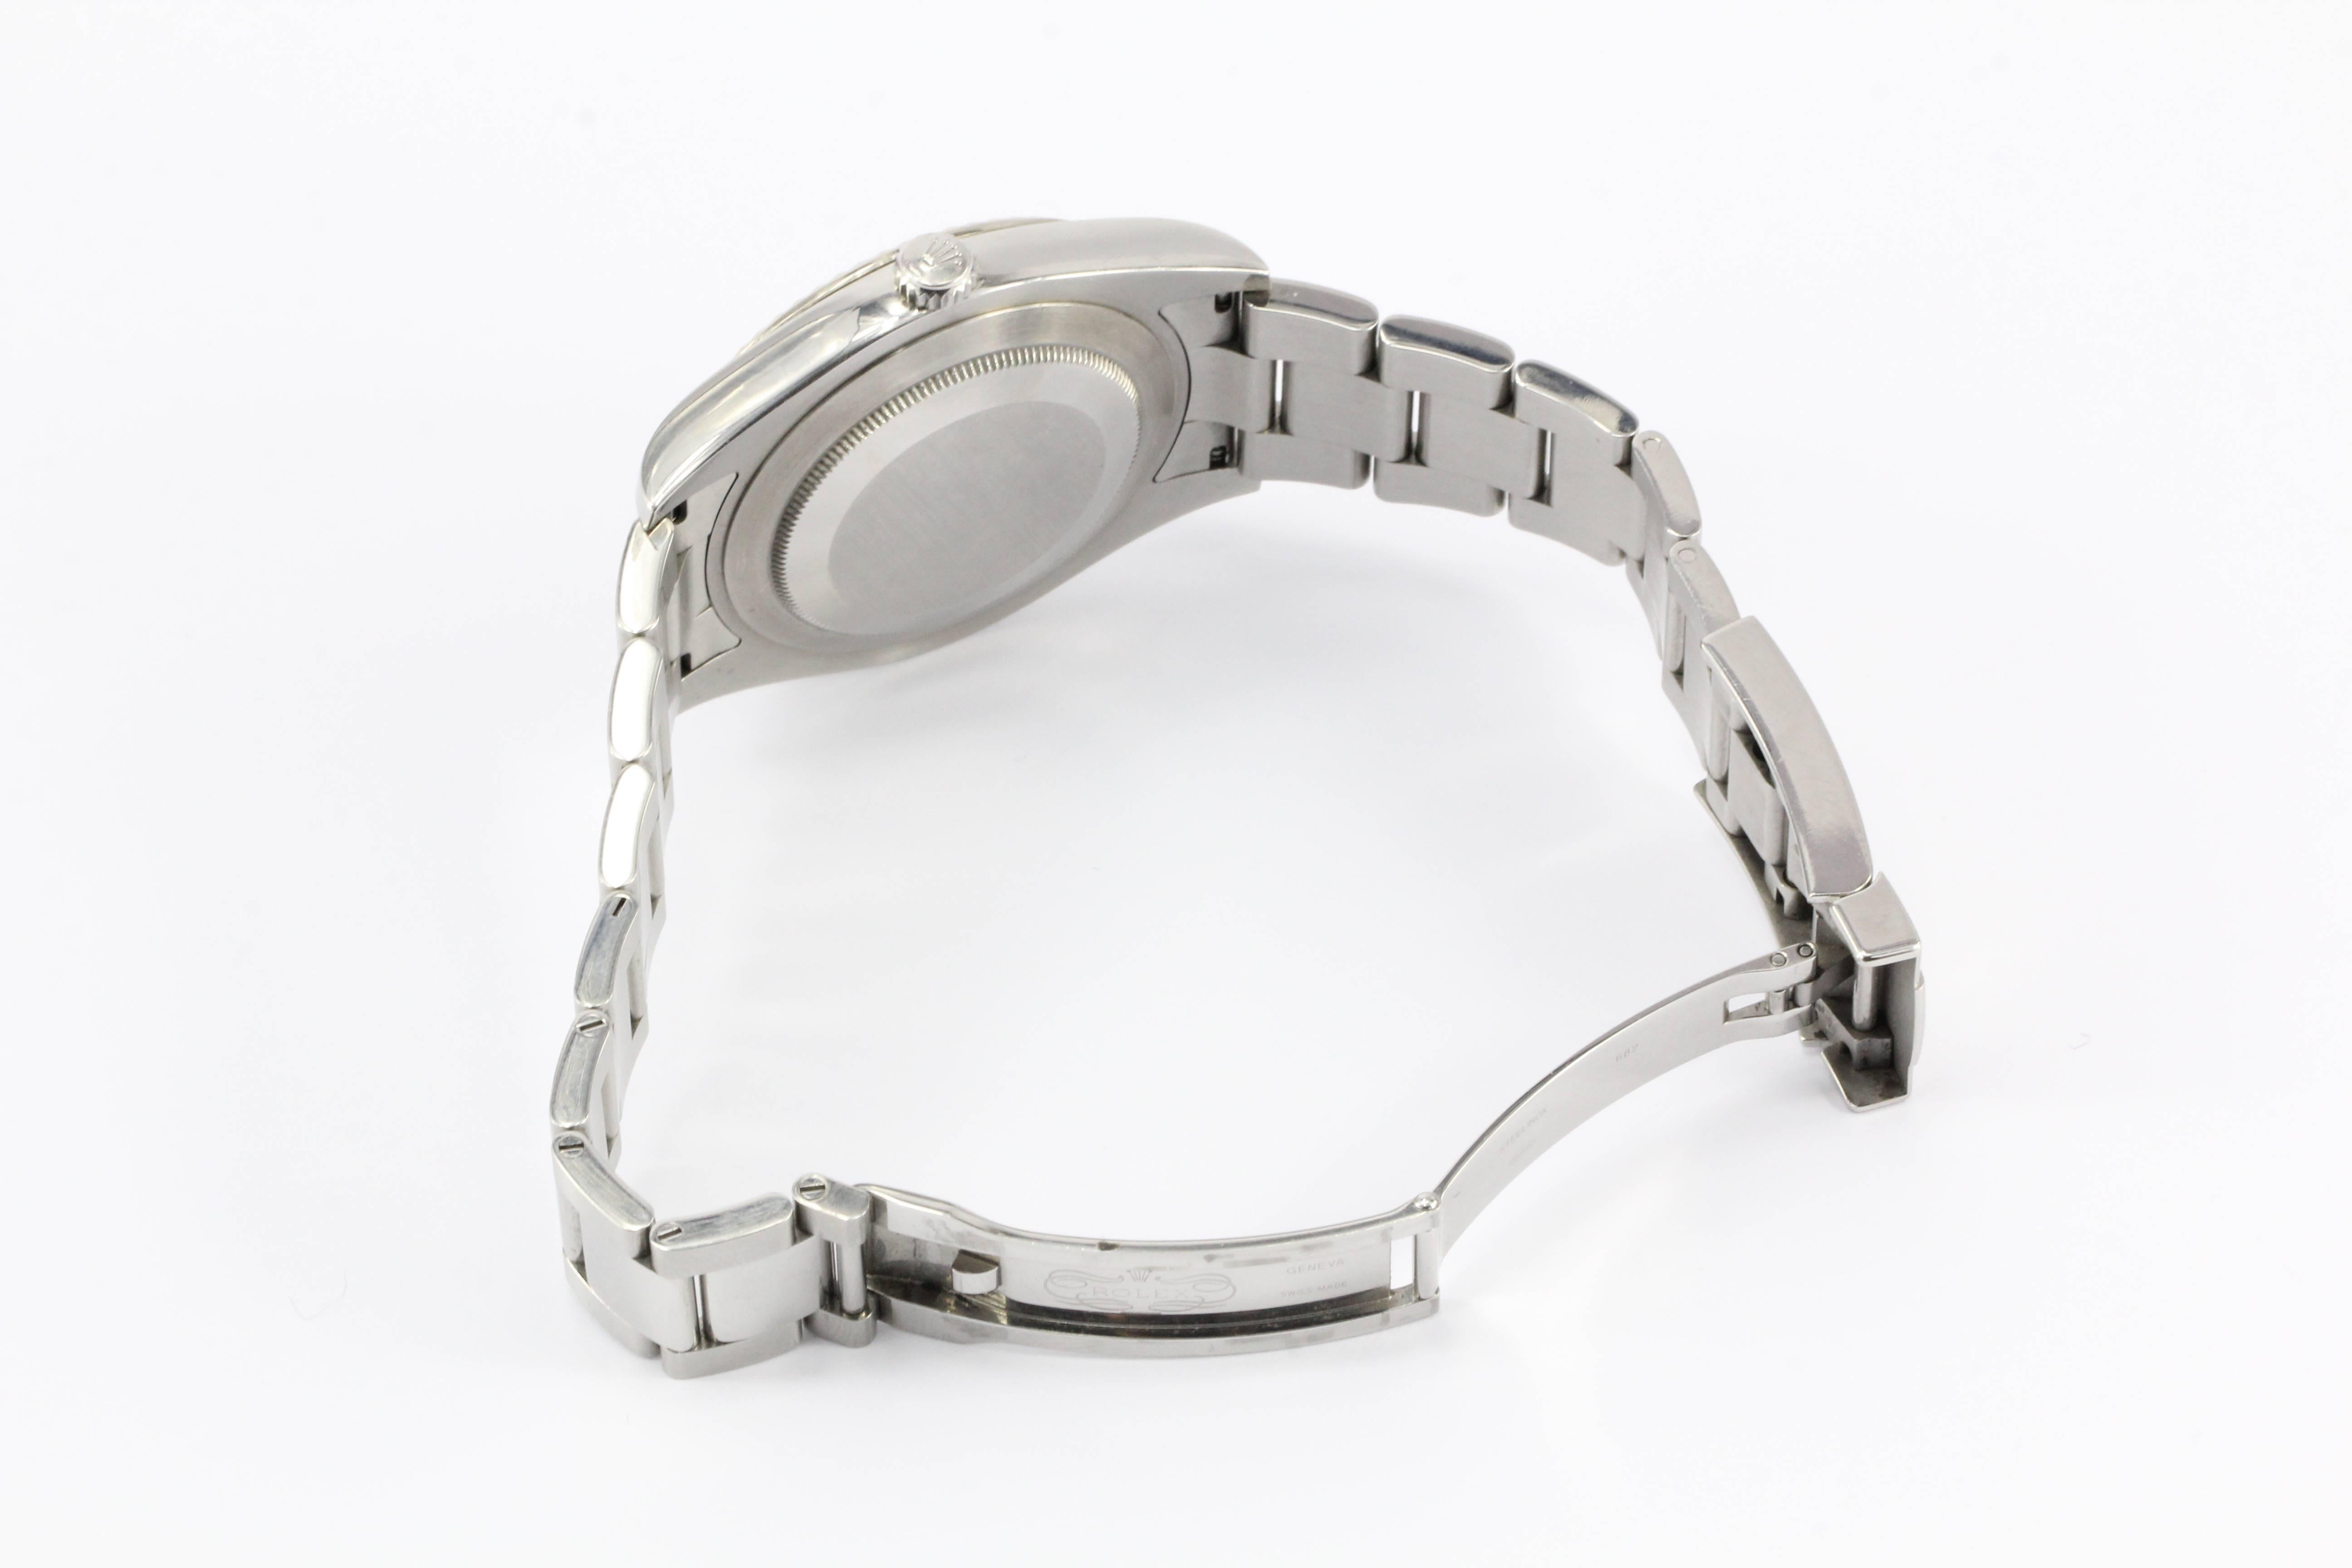 Rolex White Gold Stainless Steel Datejust II Rhodium Dial Wristwatch 5